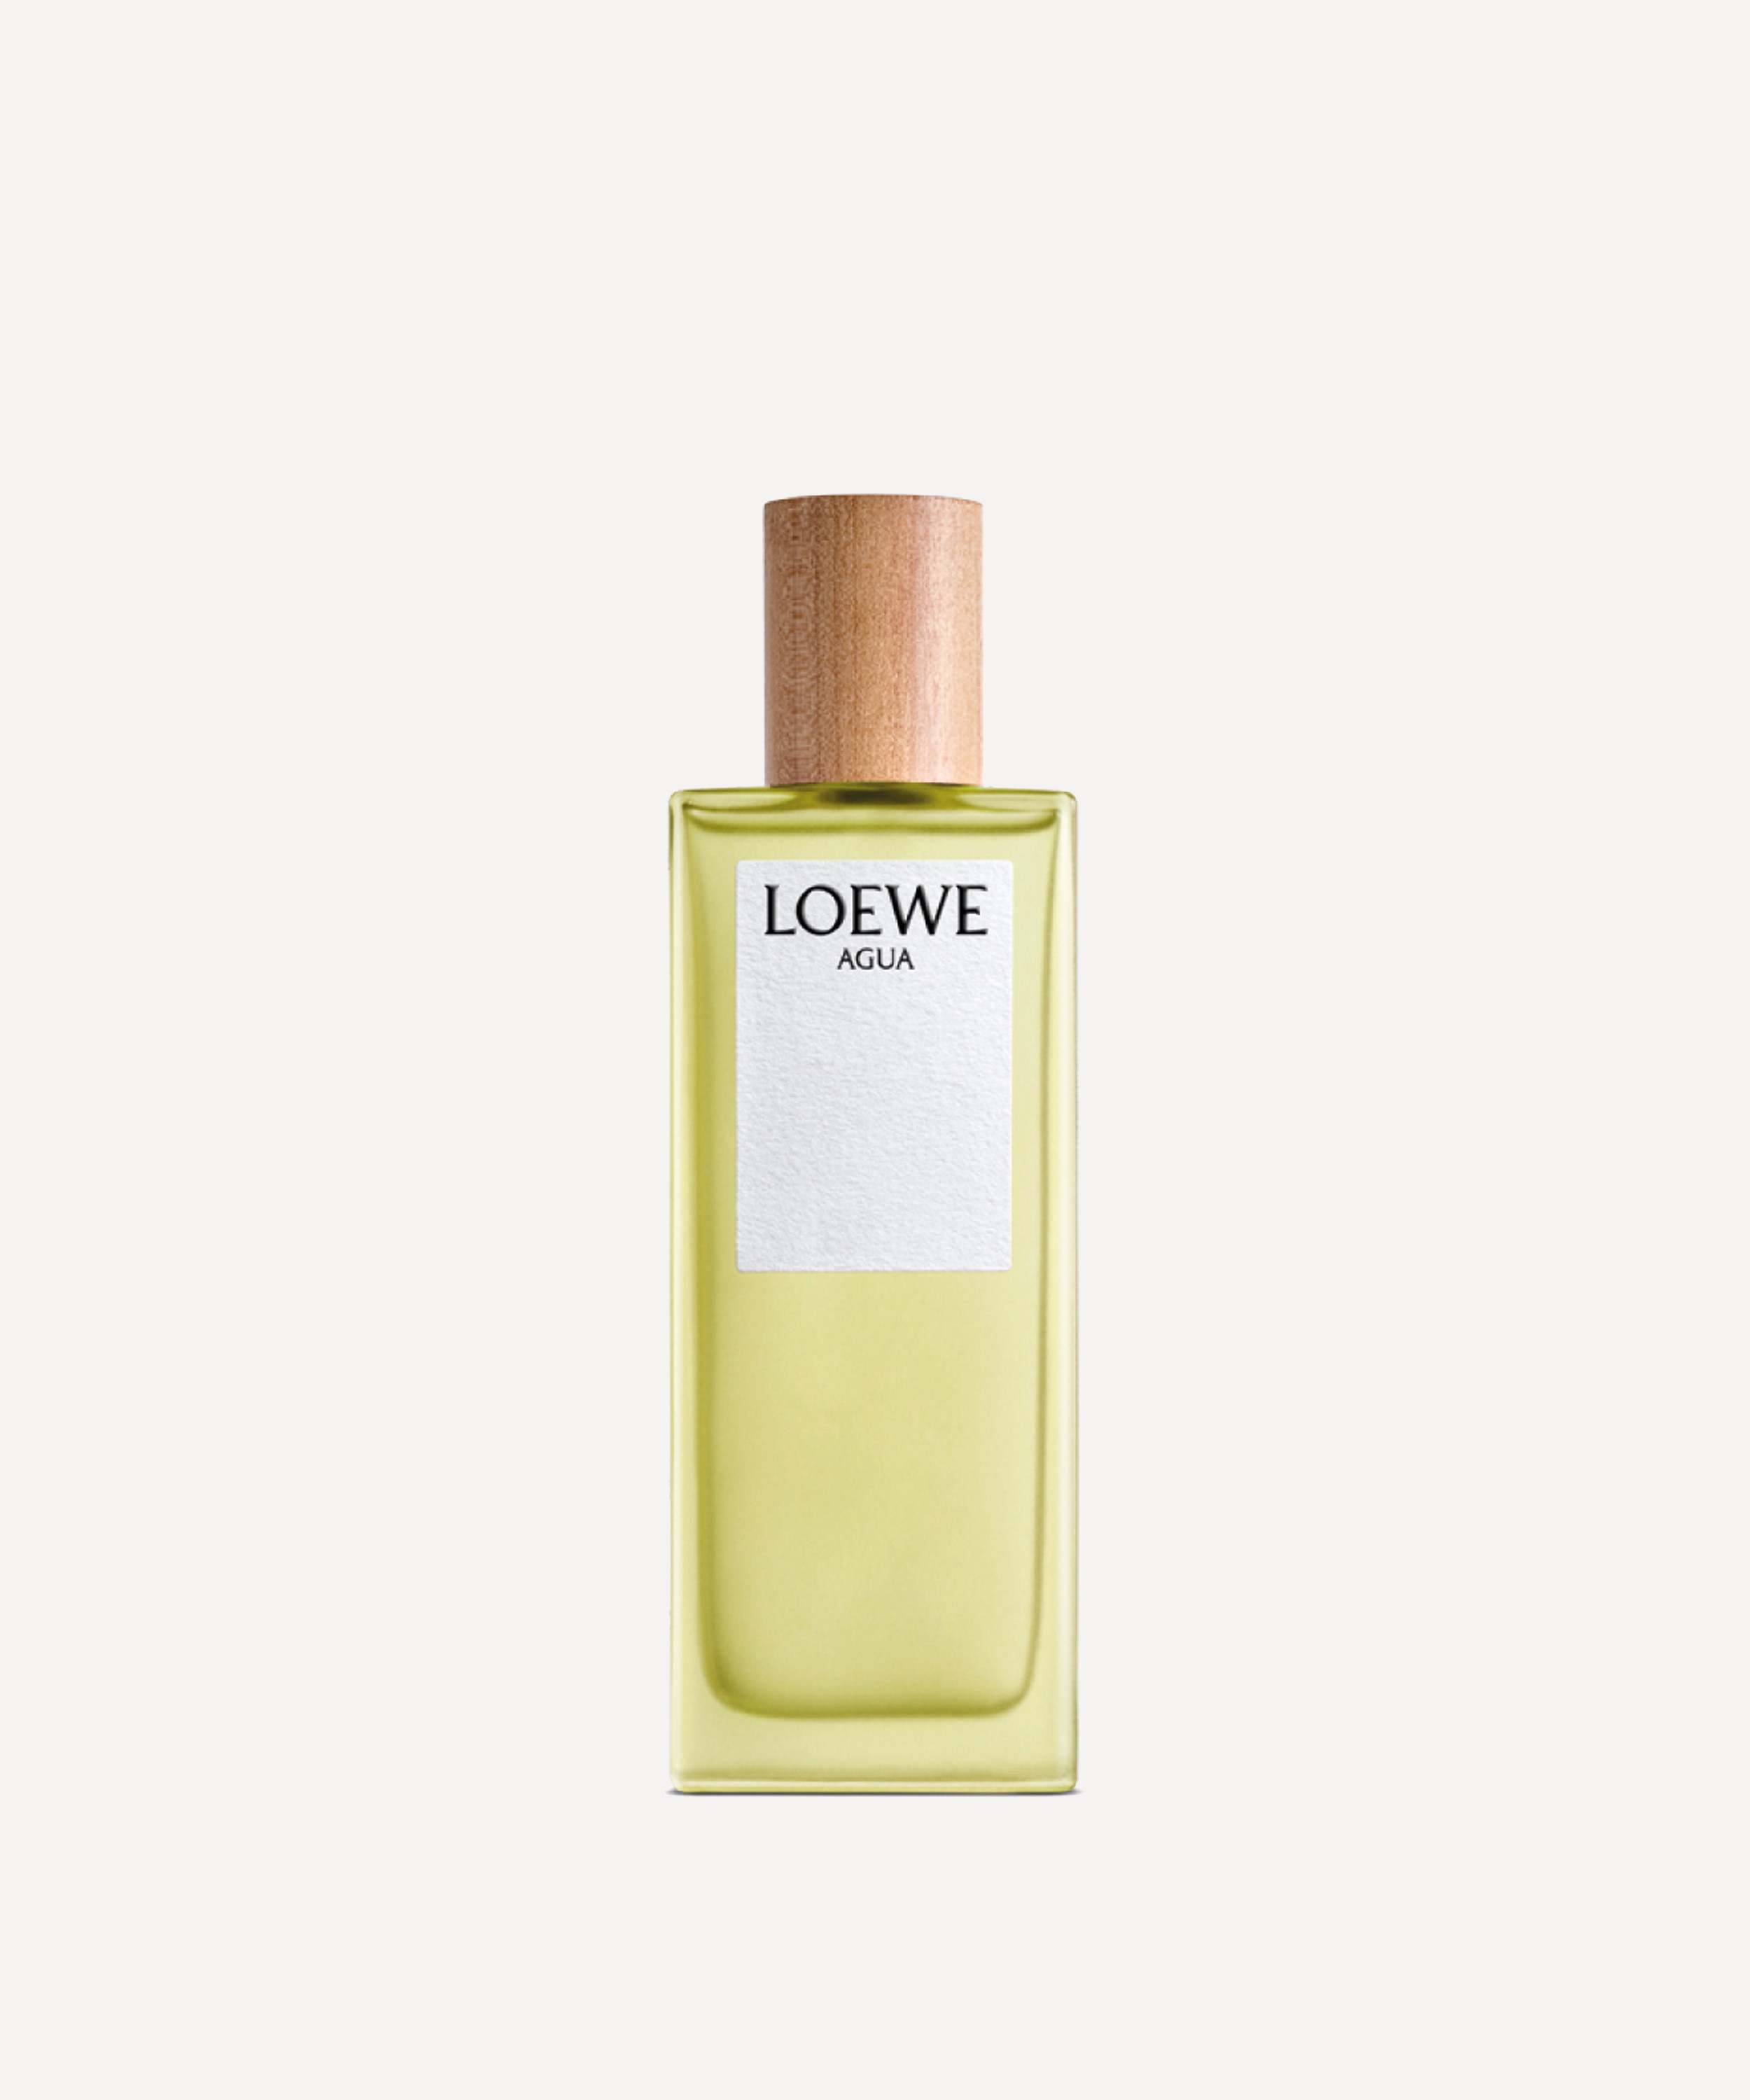 Loewe Agua Eau de Toilette 50ml | Liberty